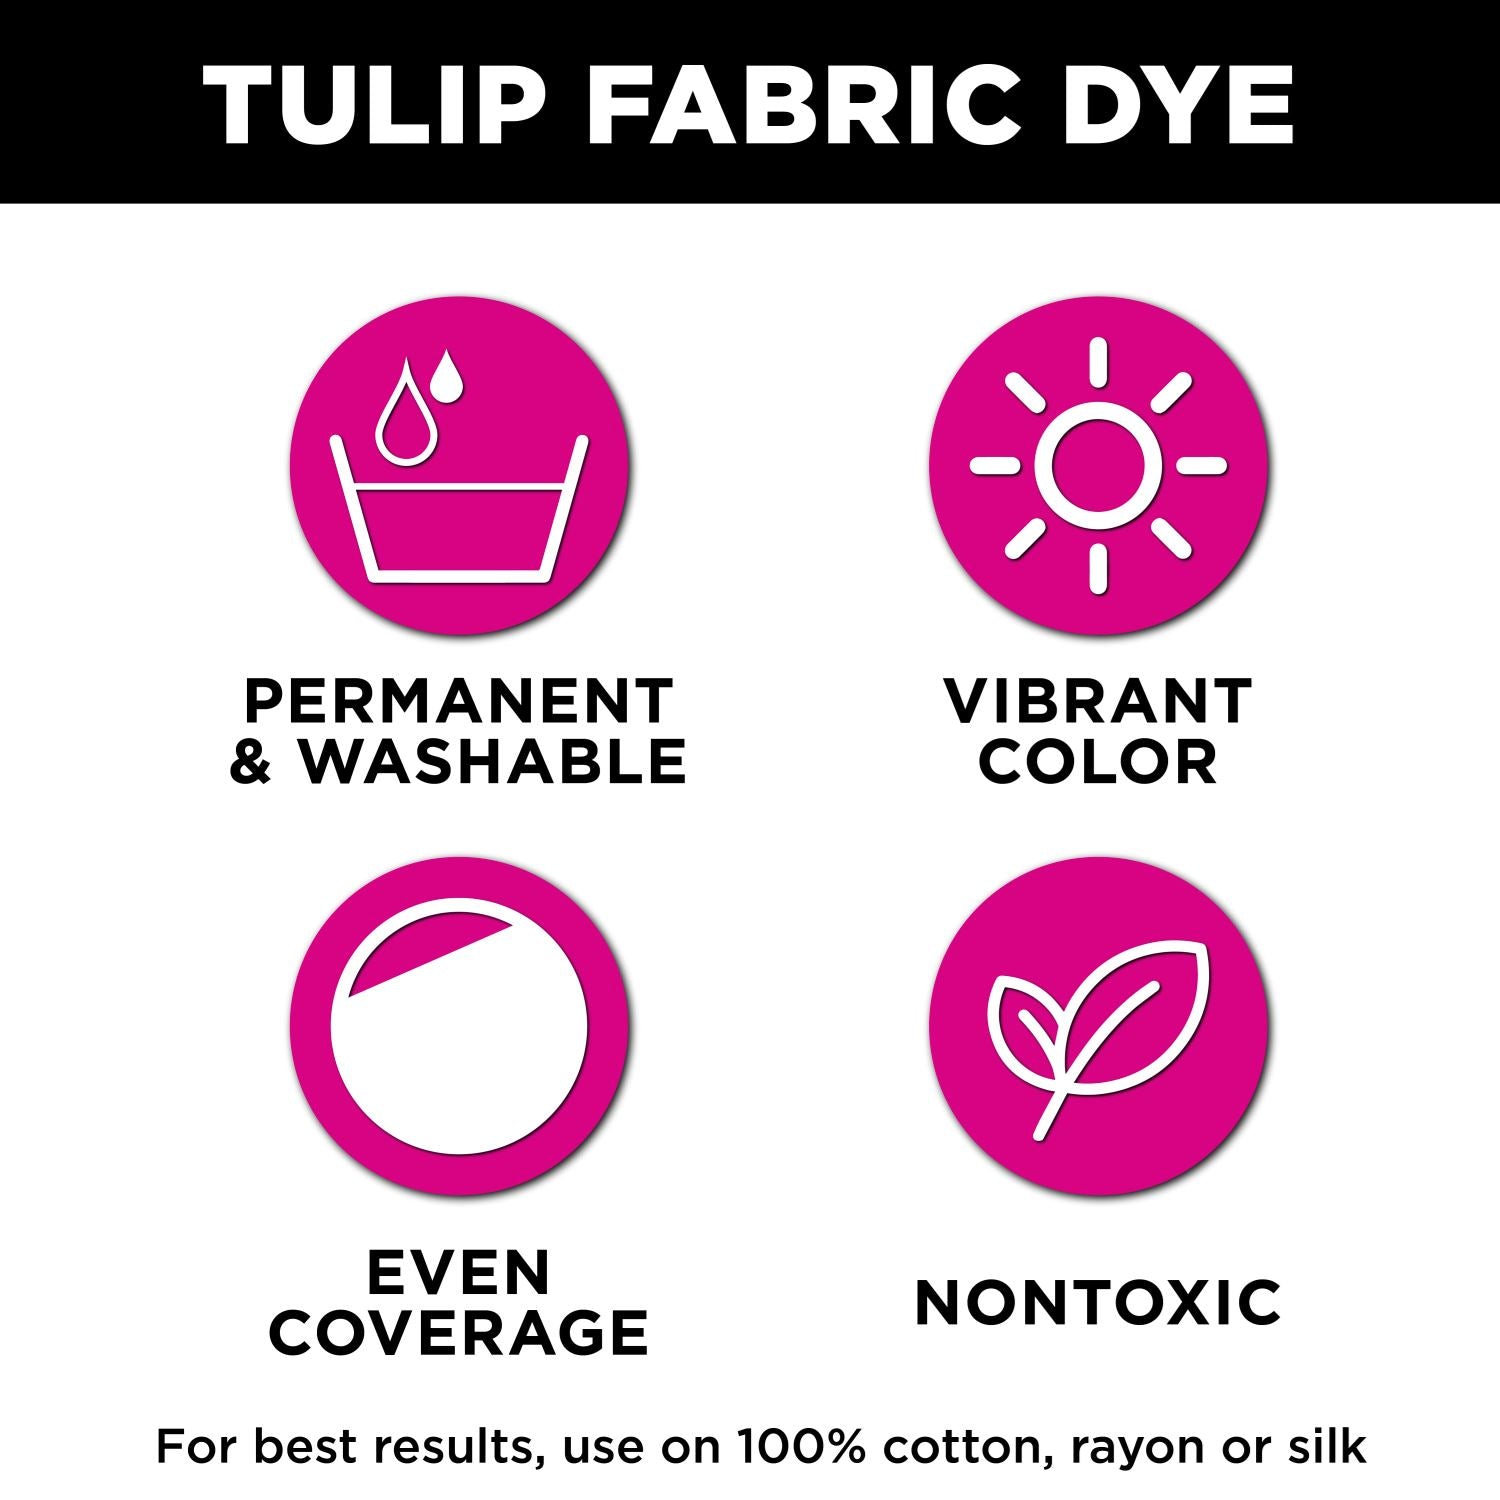 DYLON Dye, Rit Fabric Dye, Tulip Fabric Dye or DyeMore Synthetic Fiber Dye